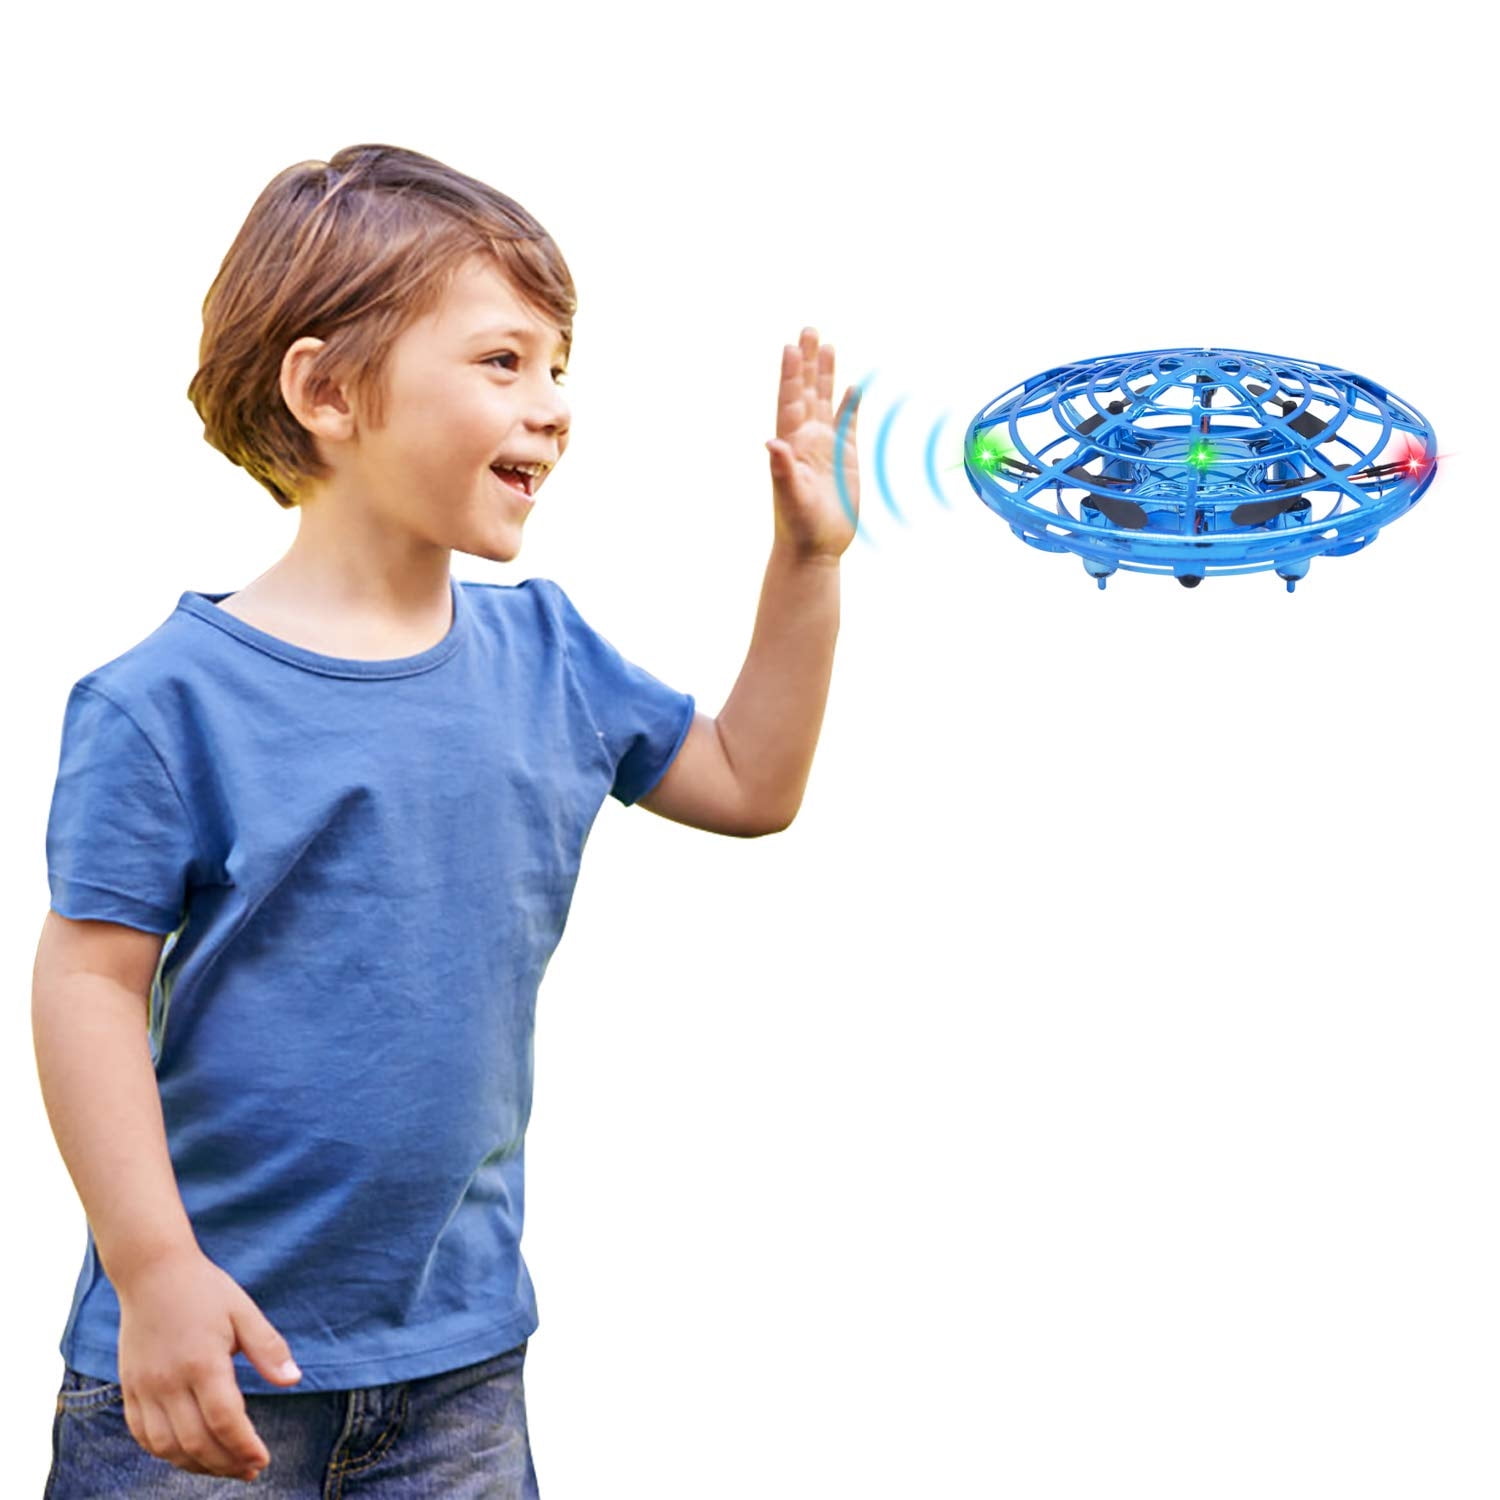 Drone UFO Facile à Contrôler Mini Drone avec Technique Gyroscopique Mini Drone avec lumières RVB Cadeaux pour Amis Garçons et Filles Chargement USB Abblie Drone Enfant 2020 Dernière Conception 